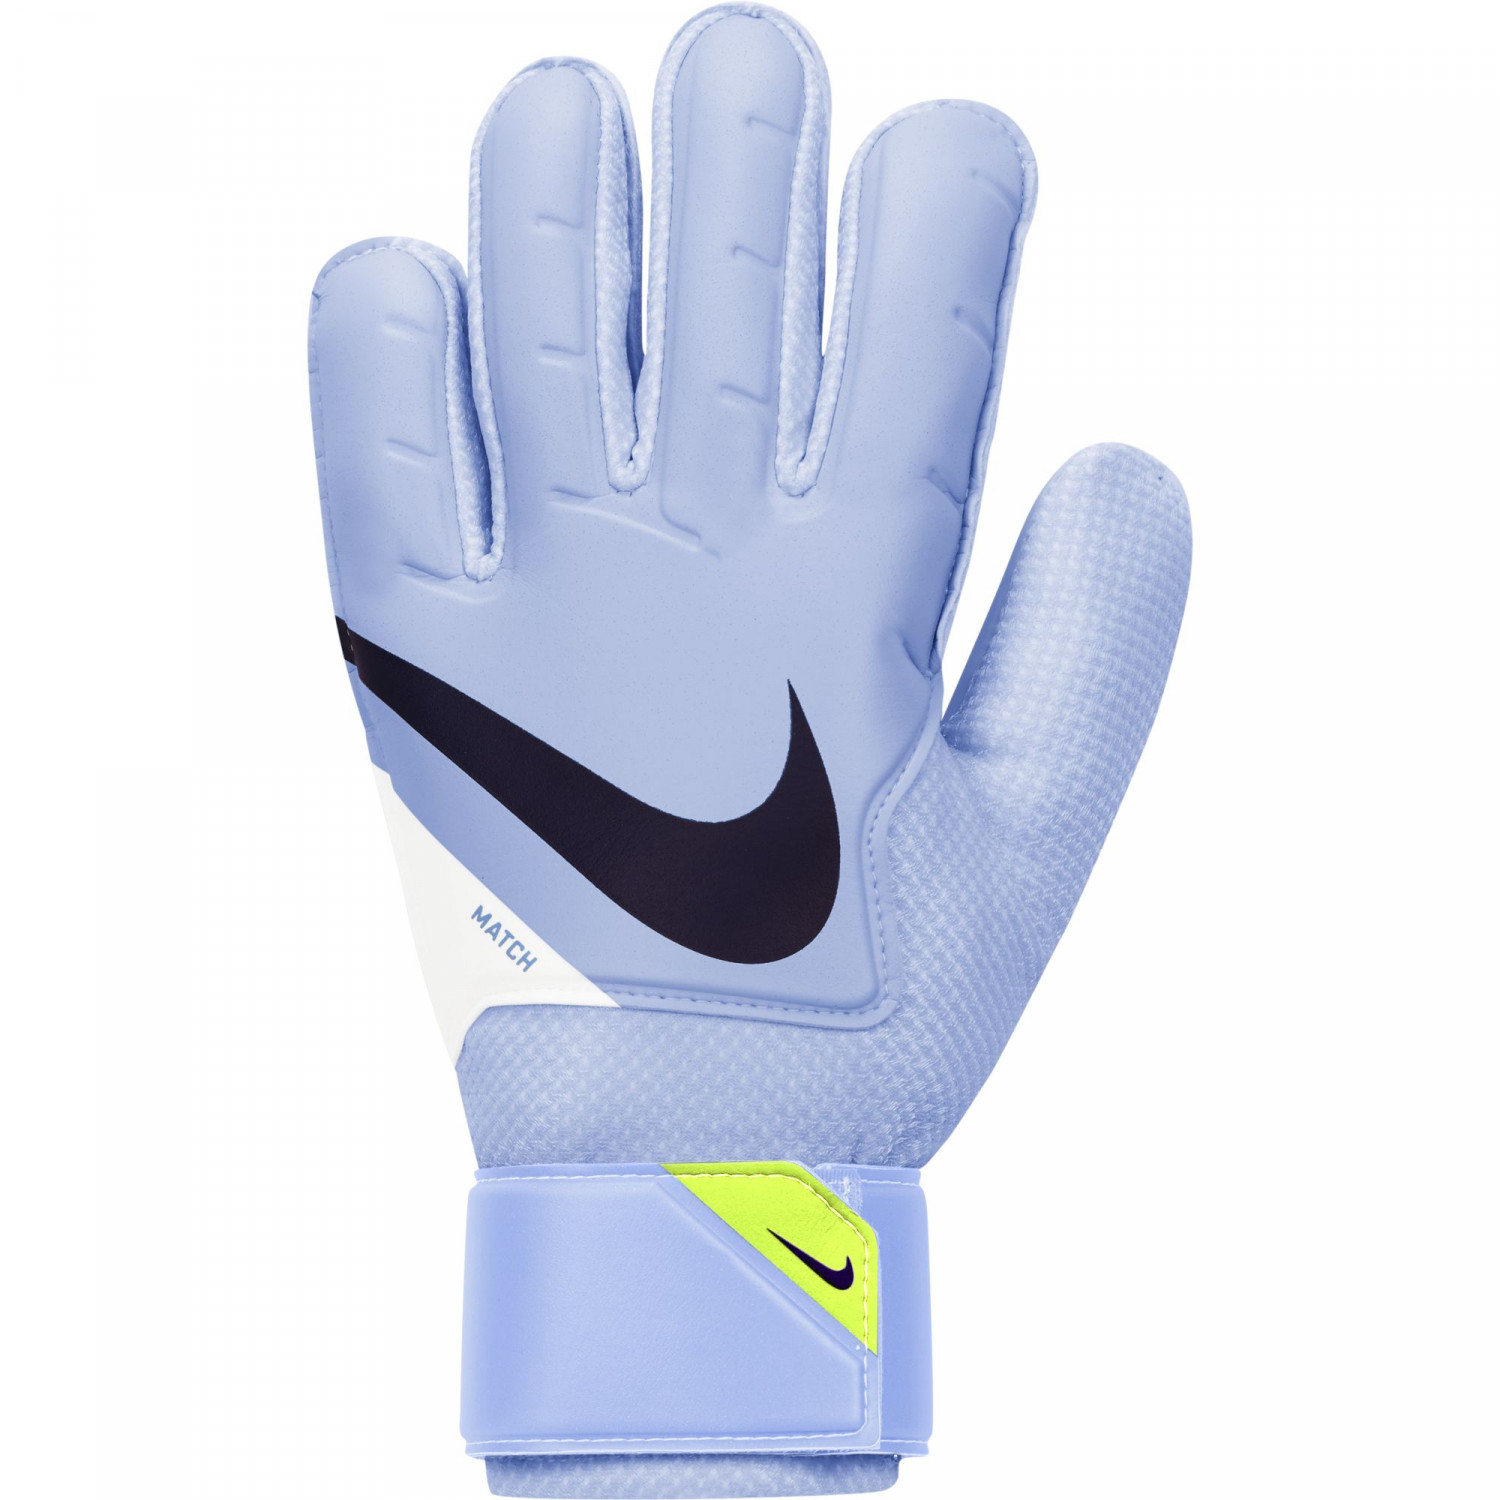 Gants gardien Nike Grip 3 bleu jaune sur